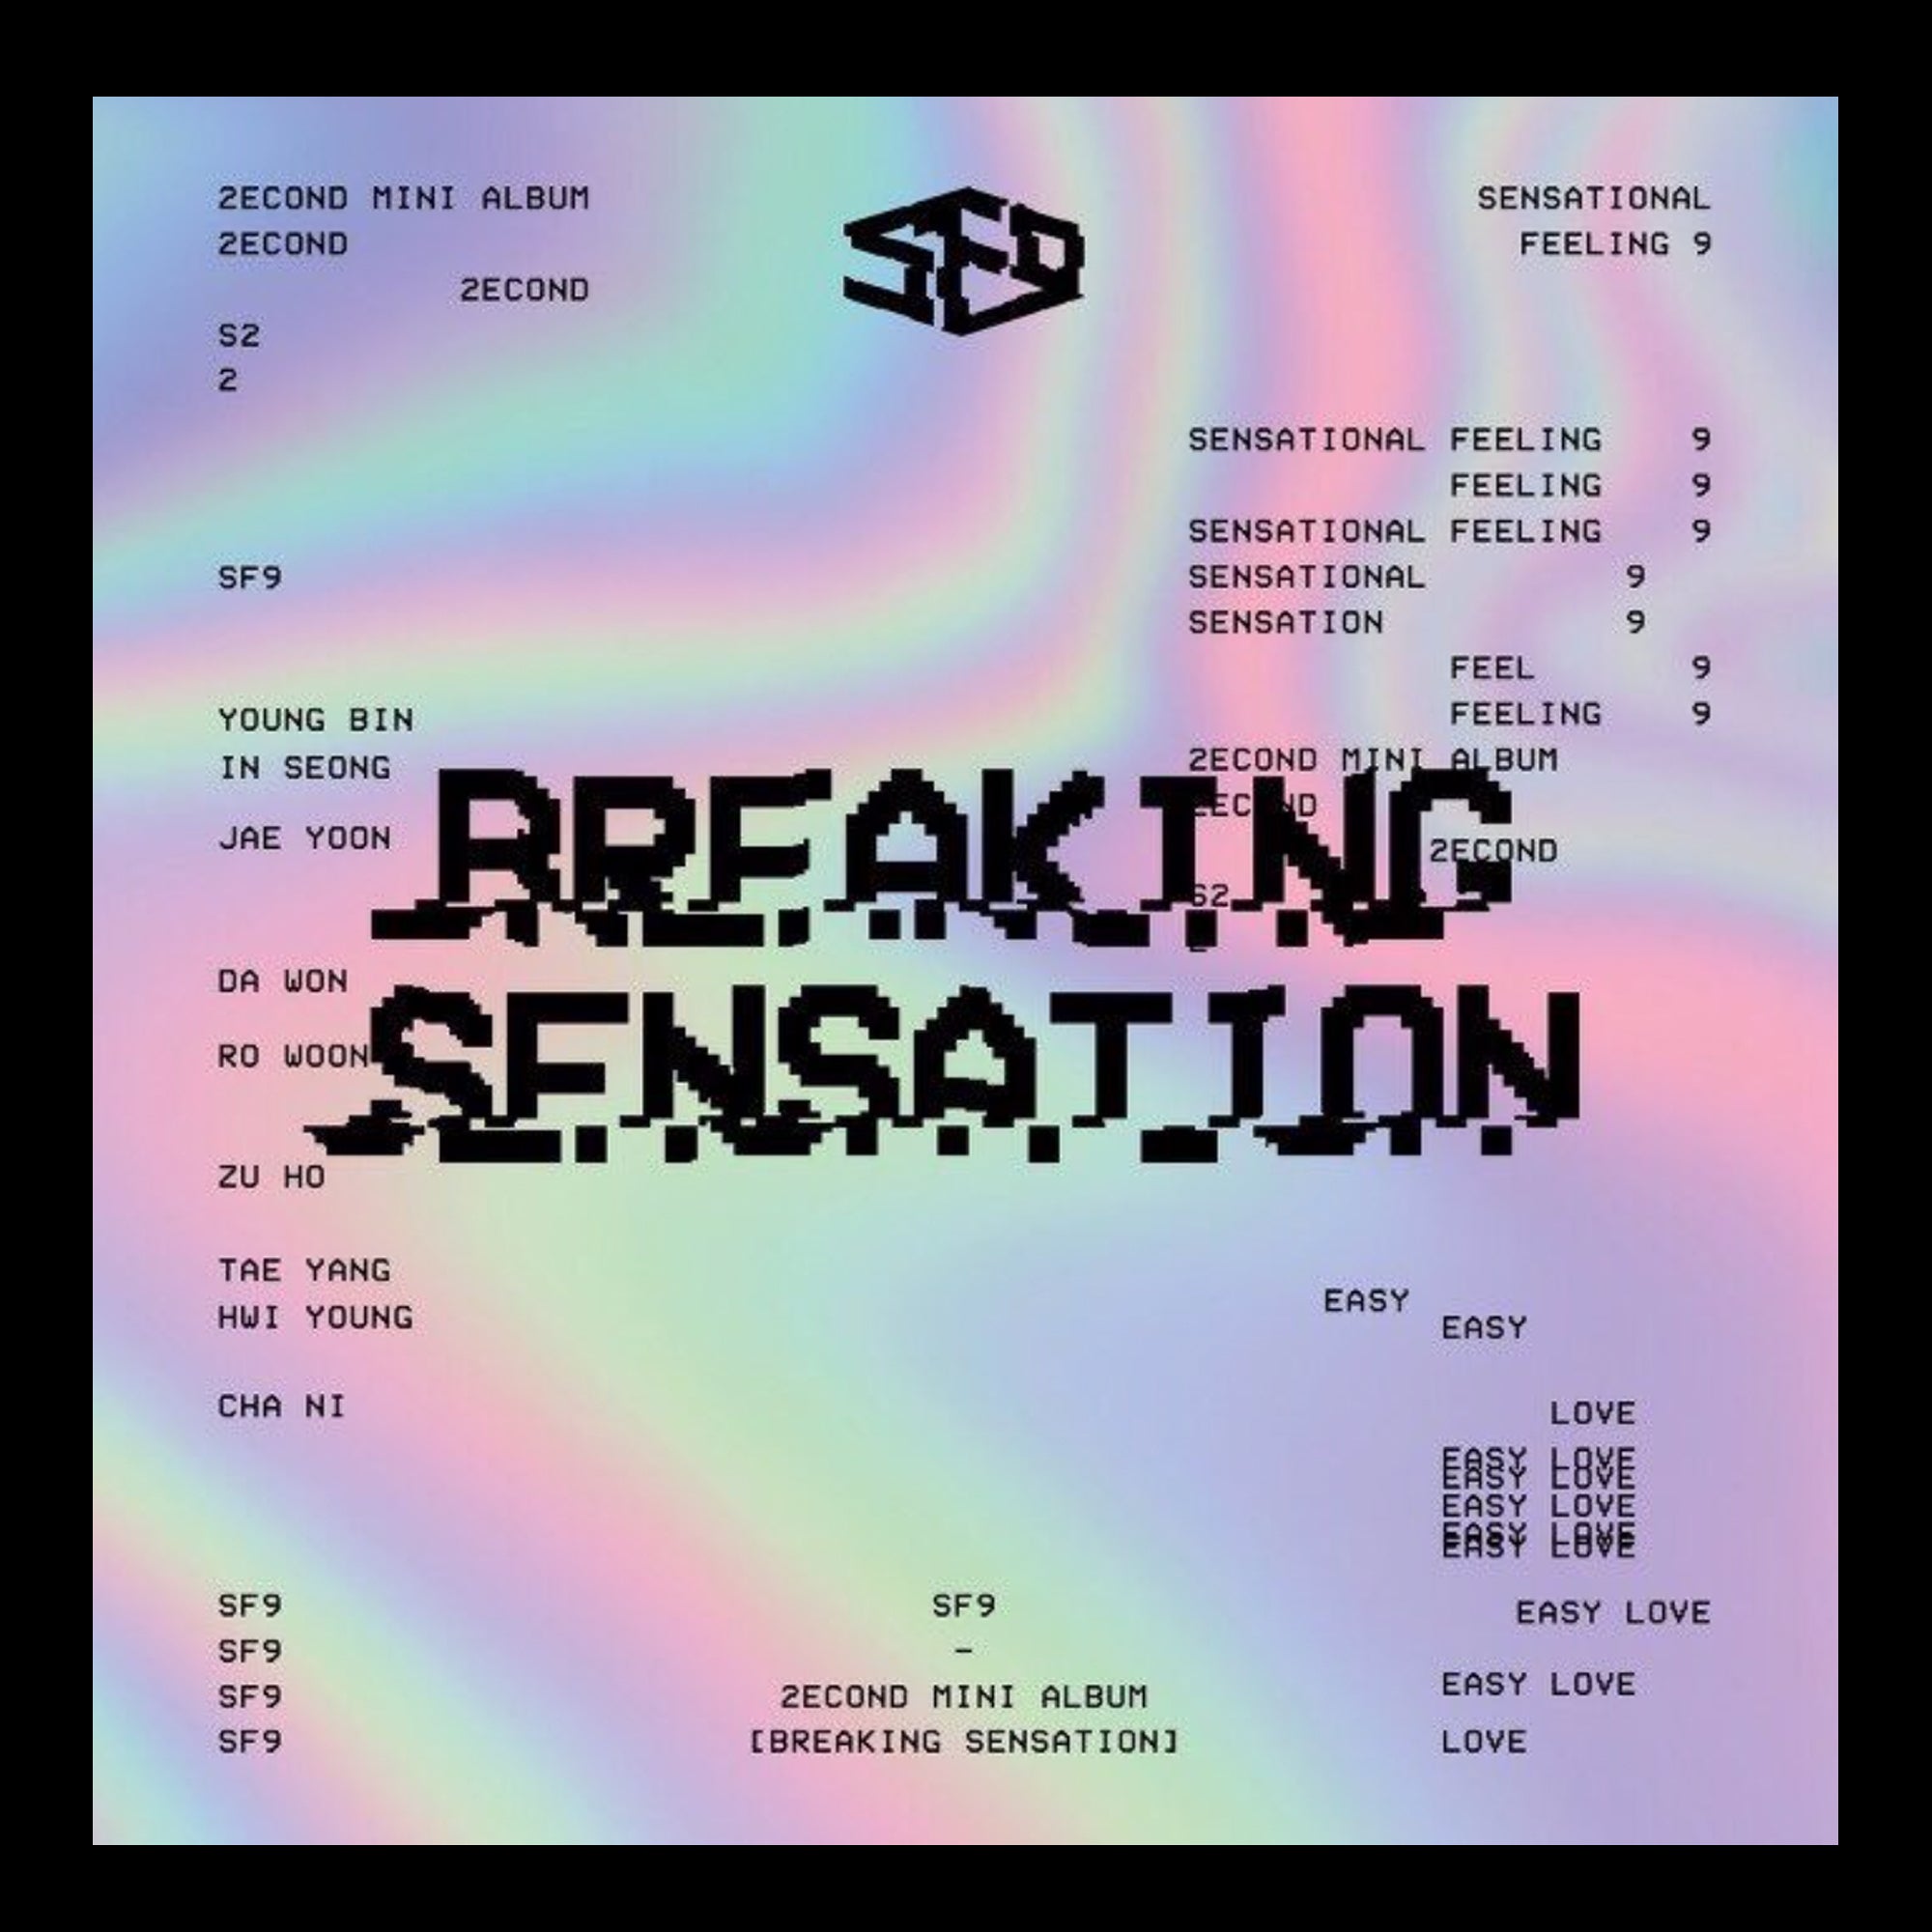 SF9 - Breaking Sensation